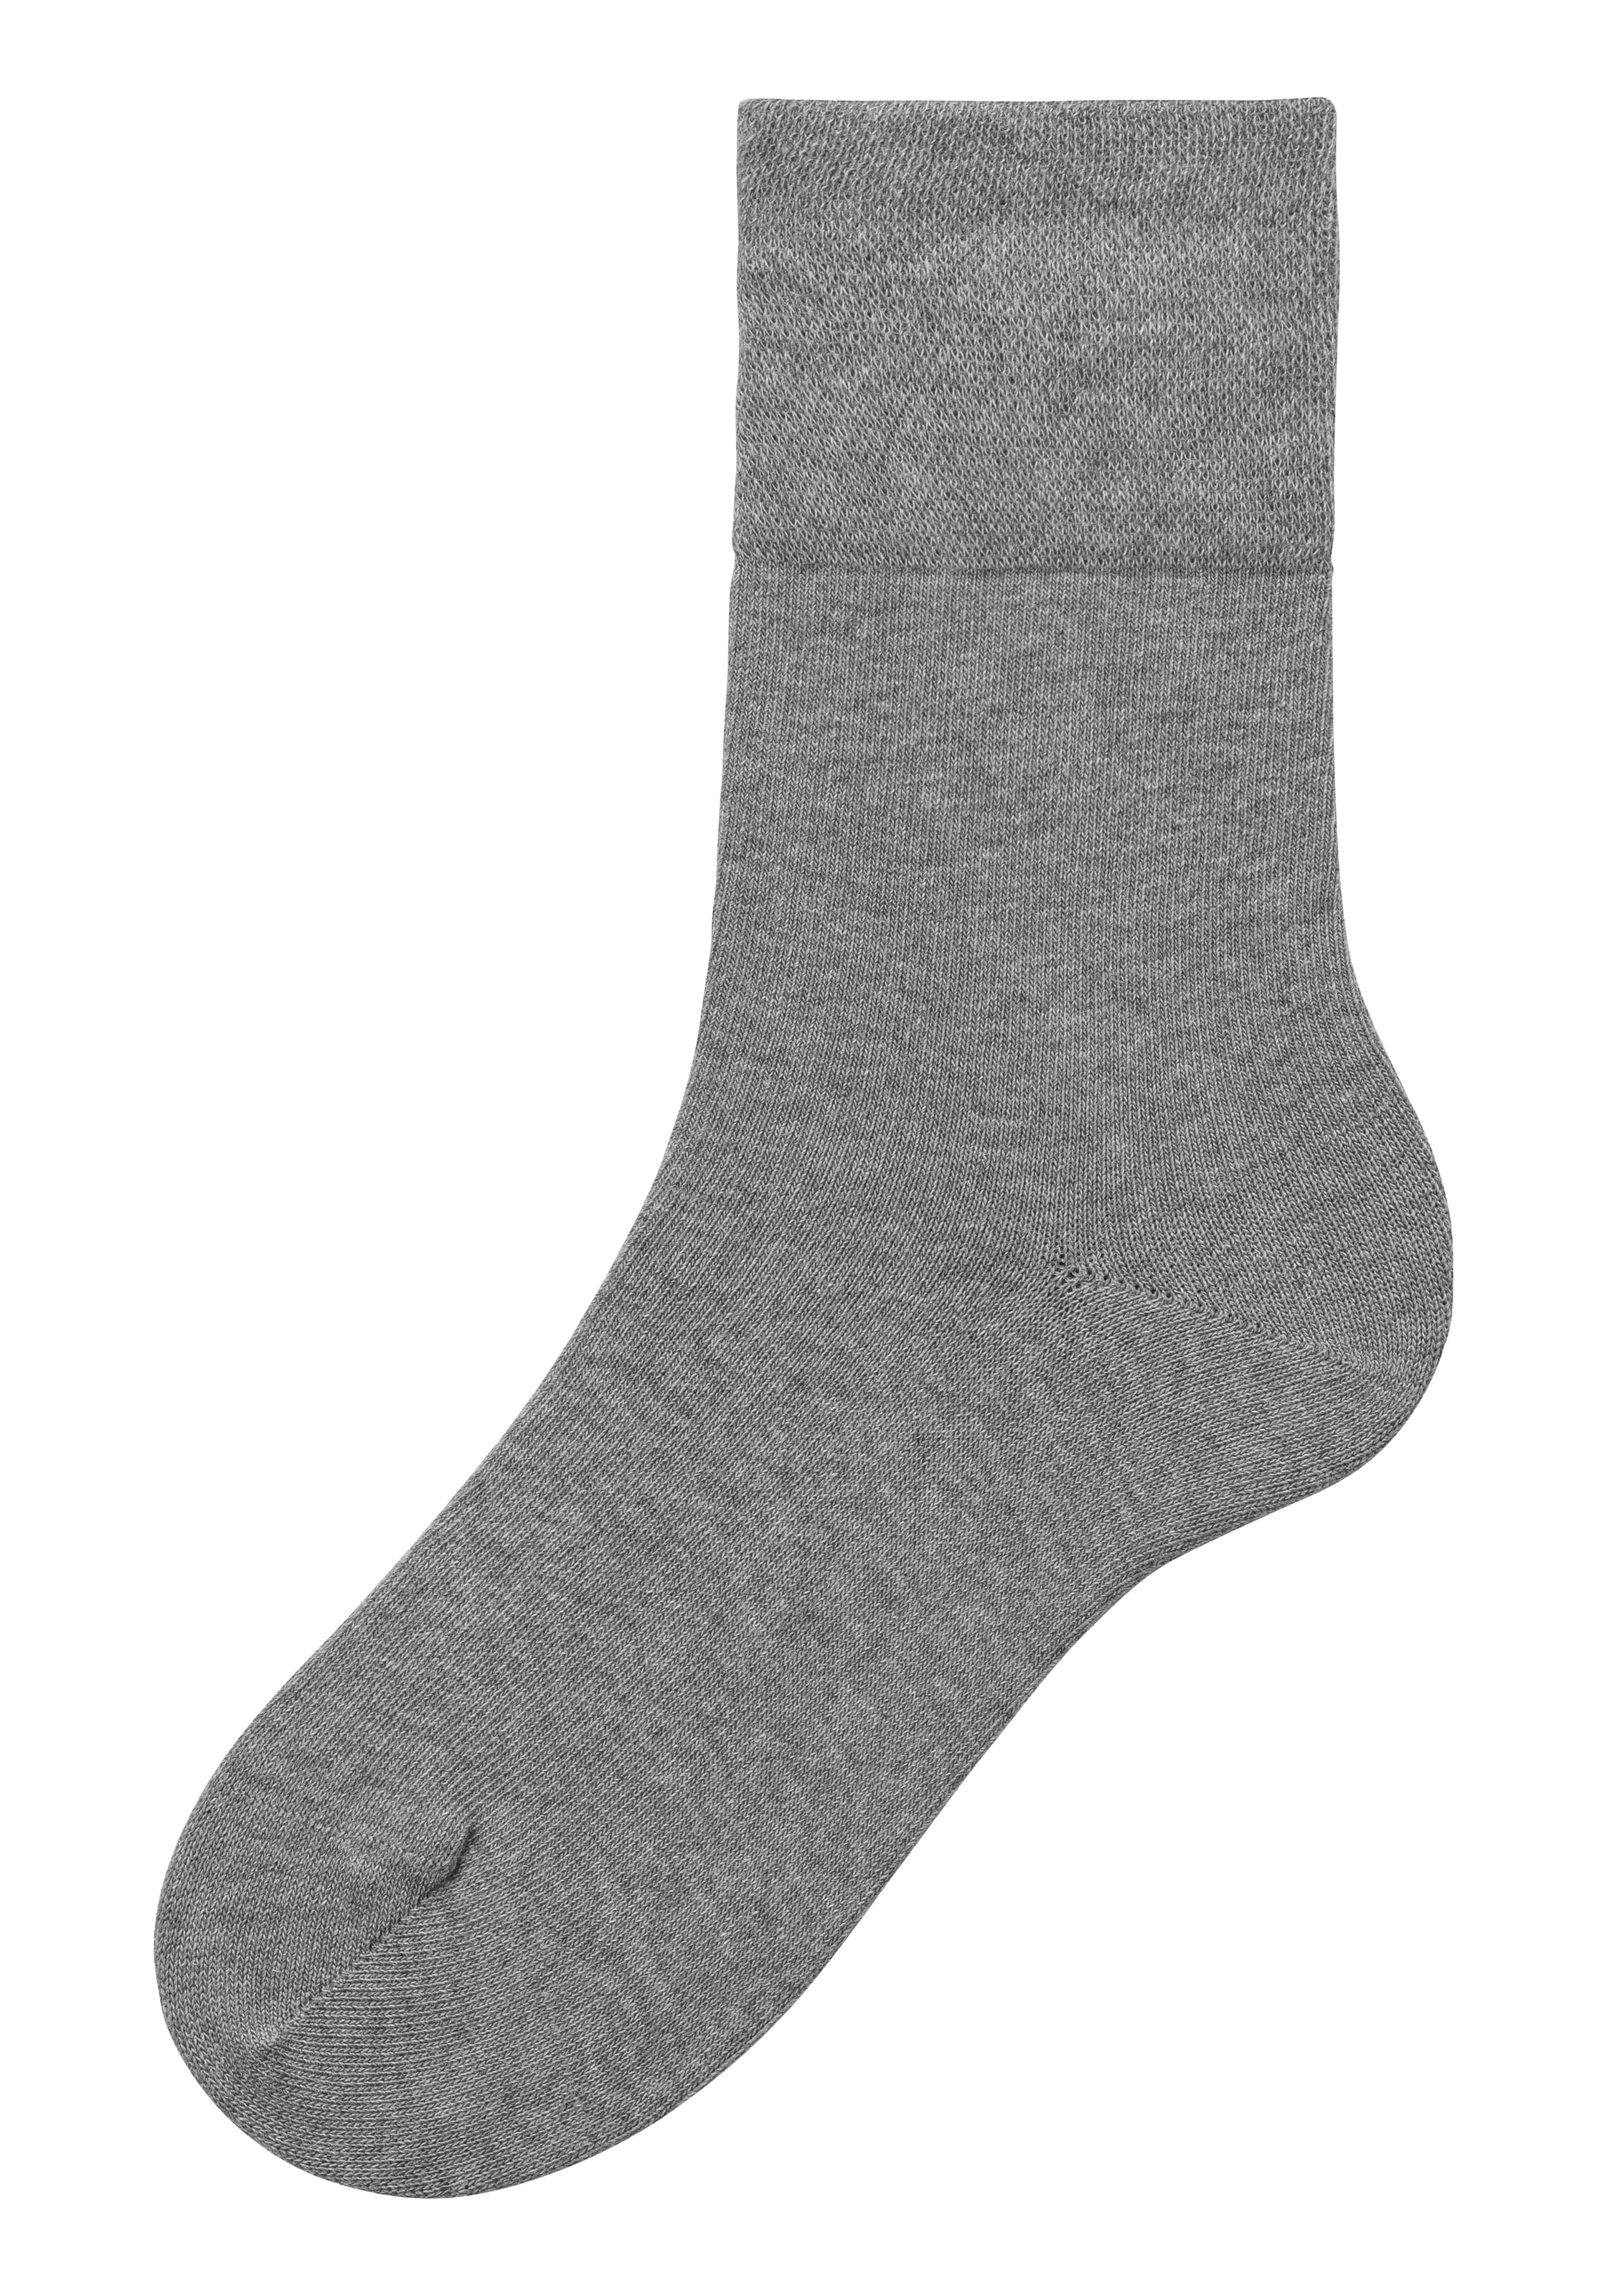 H.I.S Socken, (Set, 3 Paar), mit Komfortbund auch für Diabetiker geeignet